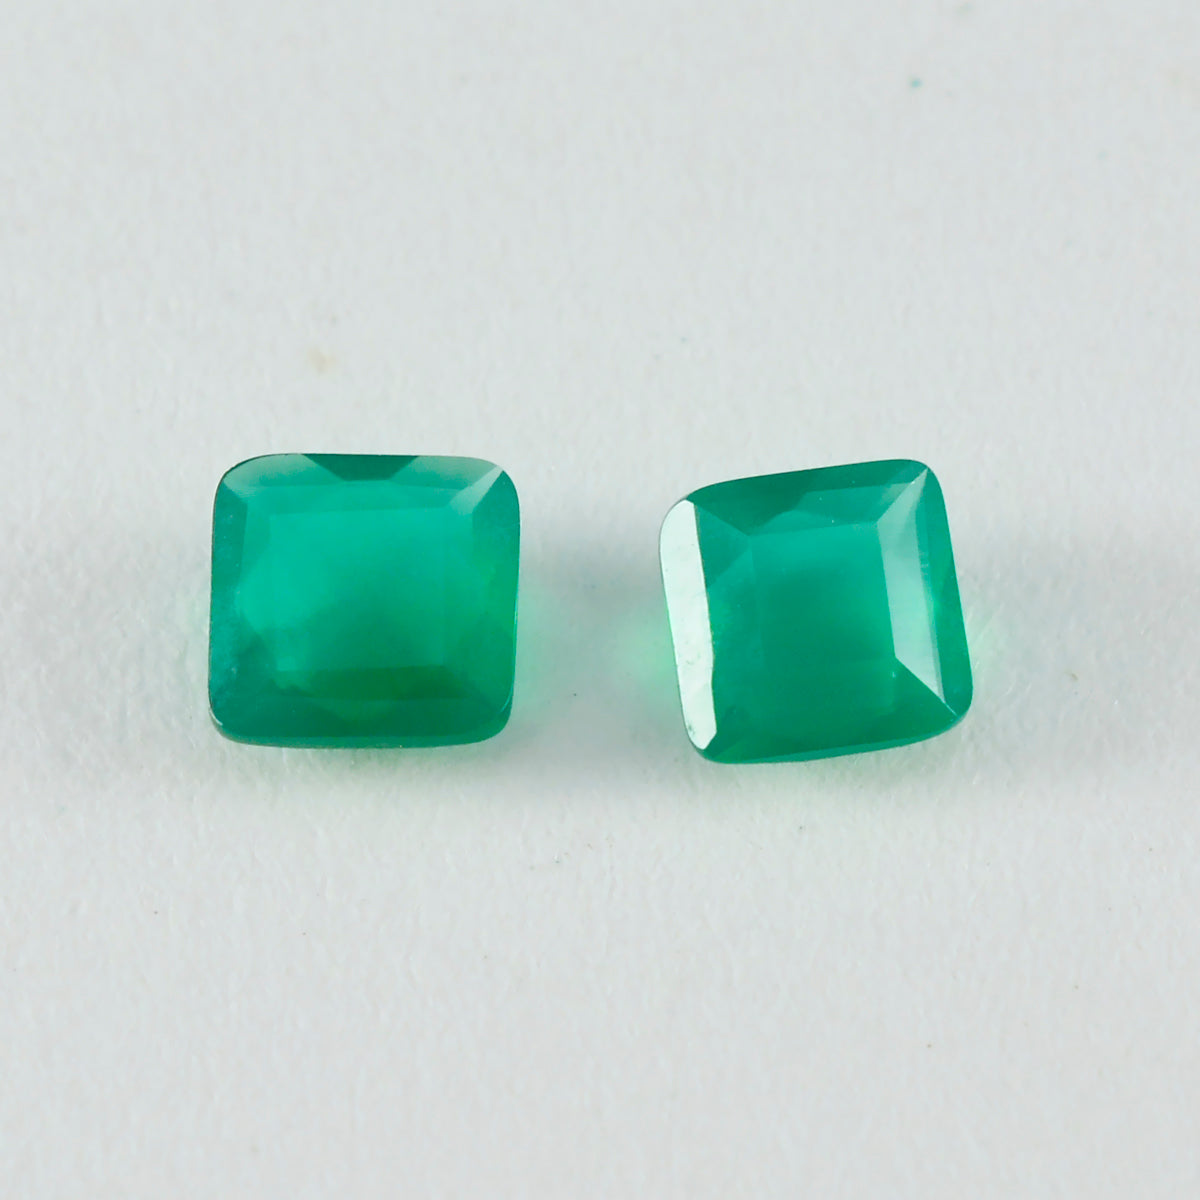 Riyogems 1 Stück echter grüner Jaspis, facettiert, 8 x 8 mm, quadratische Form, Edelstein von fantastischer Qualität